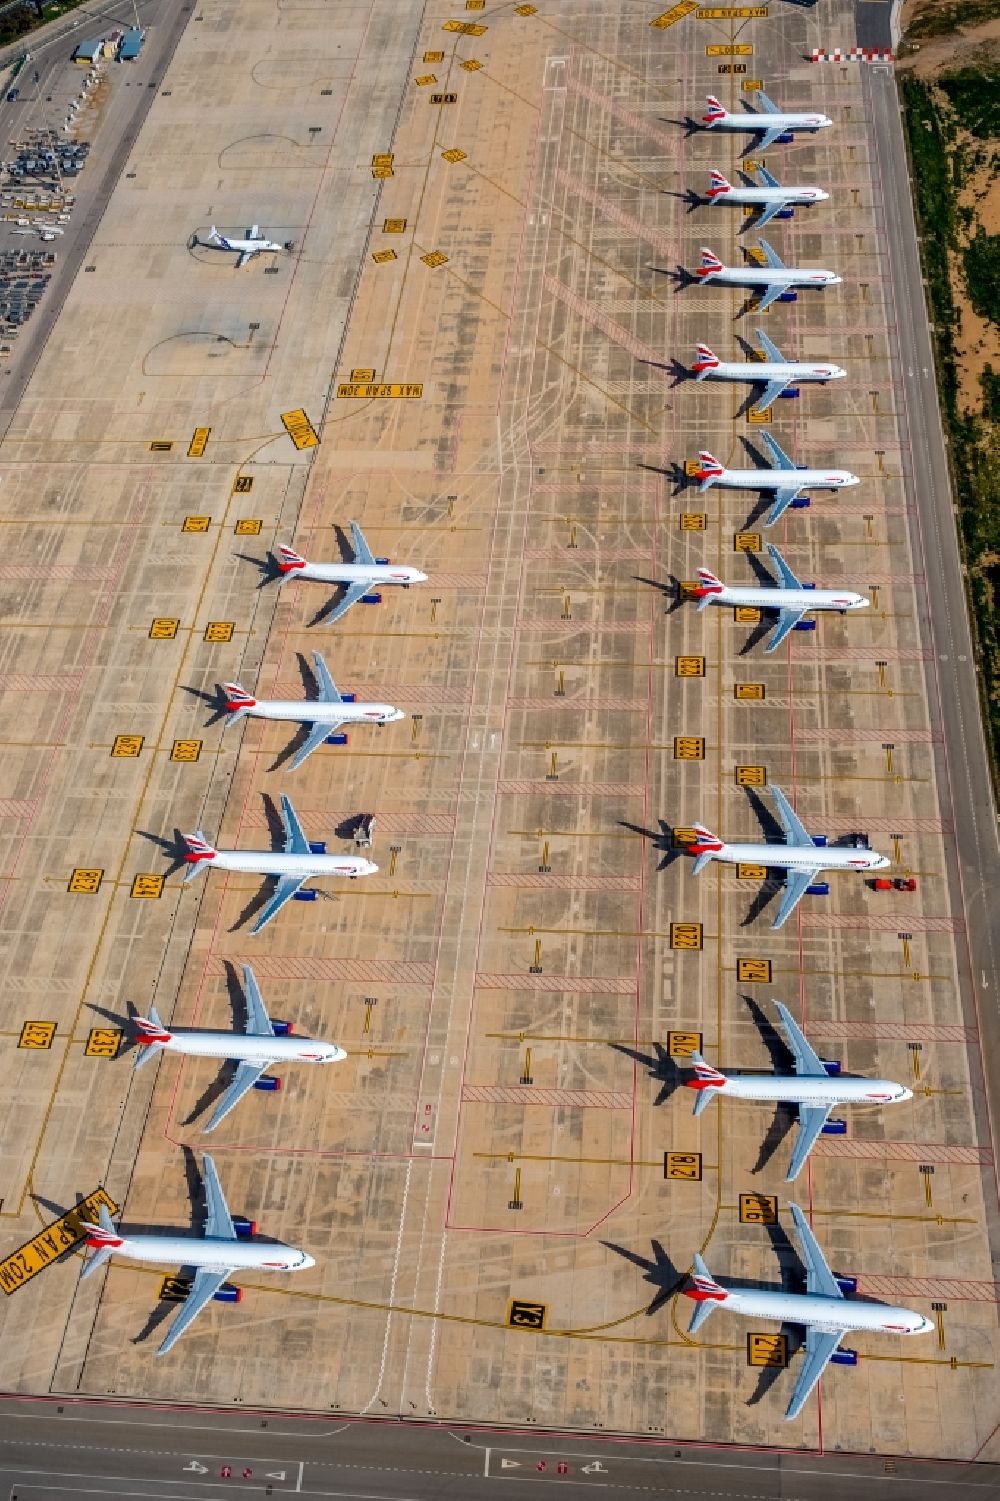 Palma aus der Vogelperspektive: Passagierflugzeuge Airbus Airbus A320-232 auf der Parkposition - Abstellfläche auf dem Flughafen im Ortsteil Llevant de Palma District in Palma in Islas Baleares, Spanien